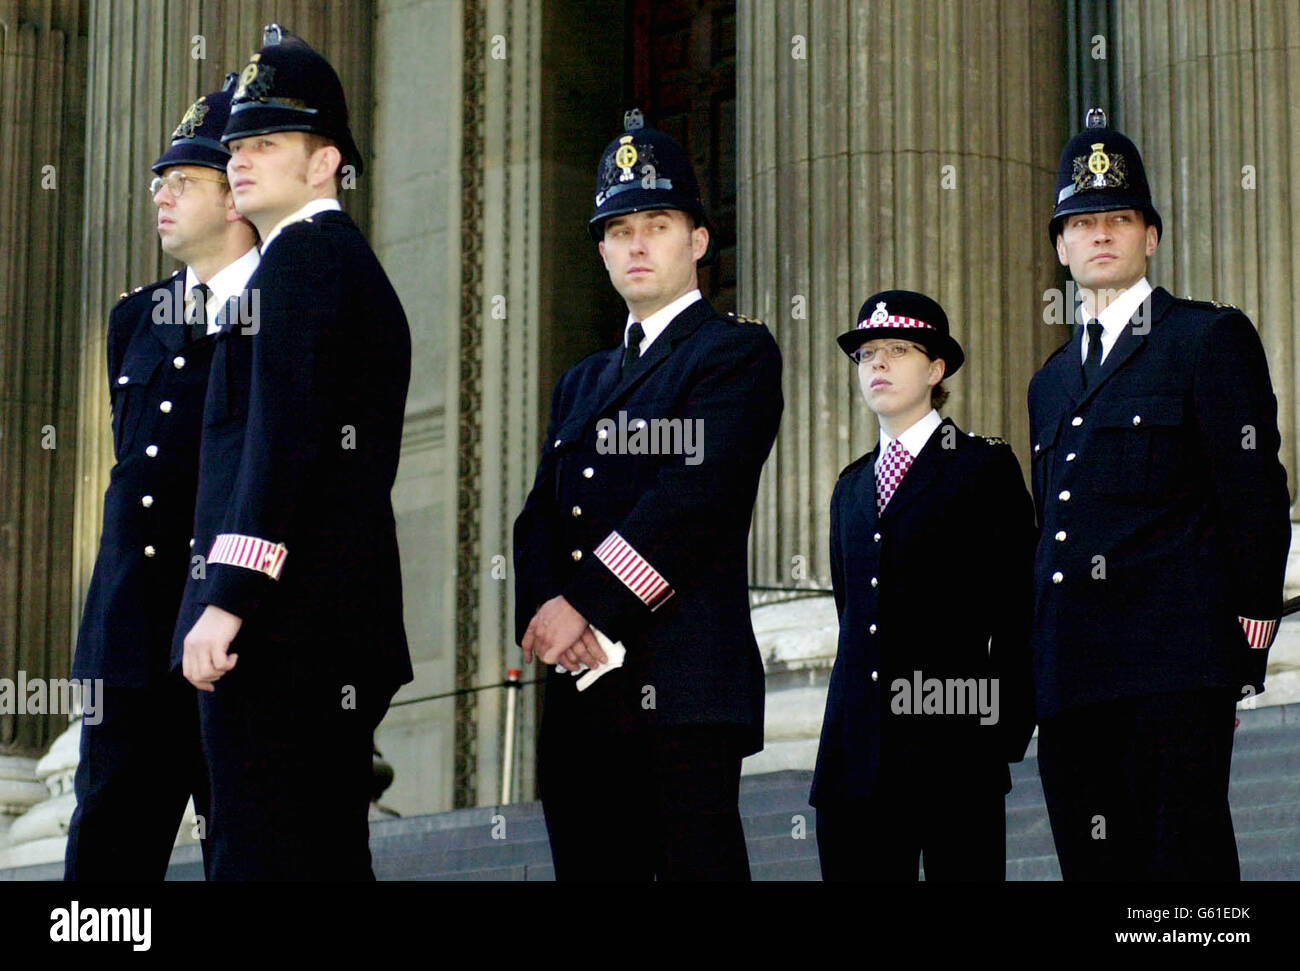 Gli agenti di polizia della città di Londra intensificarono la sicurezza fuori dalla cattedrale di St Paul nella città di Londra, dove si svolgerà un servizio commemorativo per onorare coloro la cui vita è stata persa durante gli attacchi terroristici a New York e Washington DC. Foto Stock